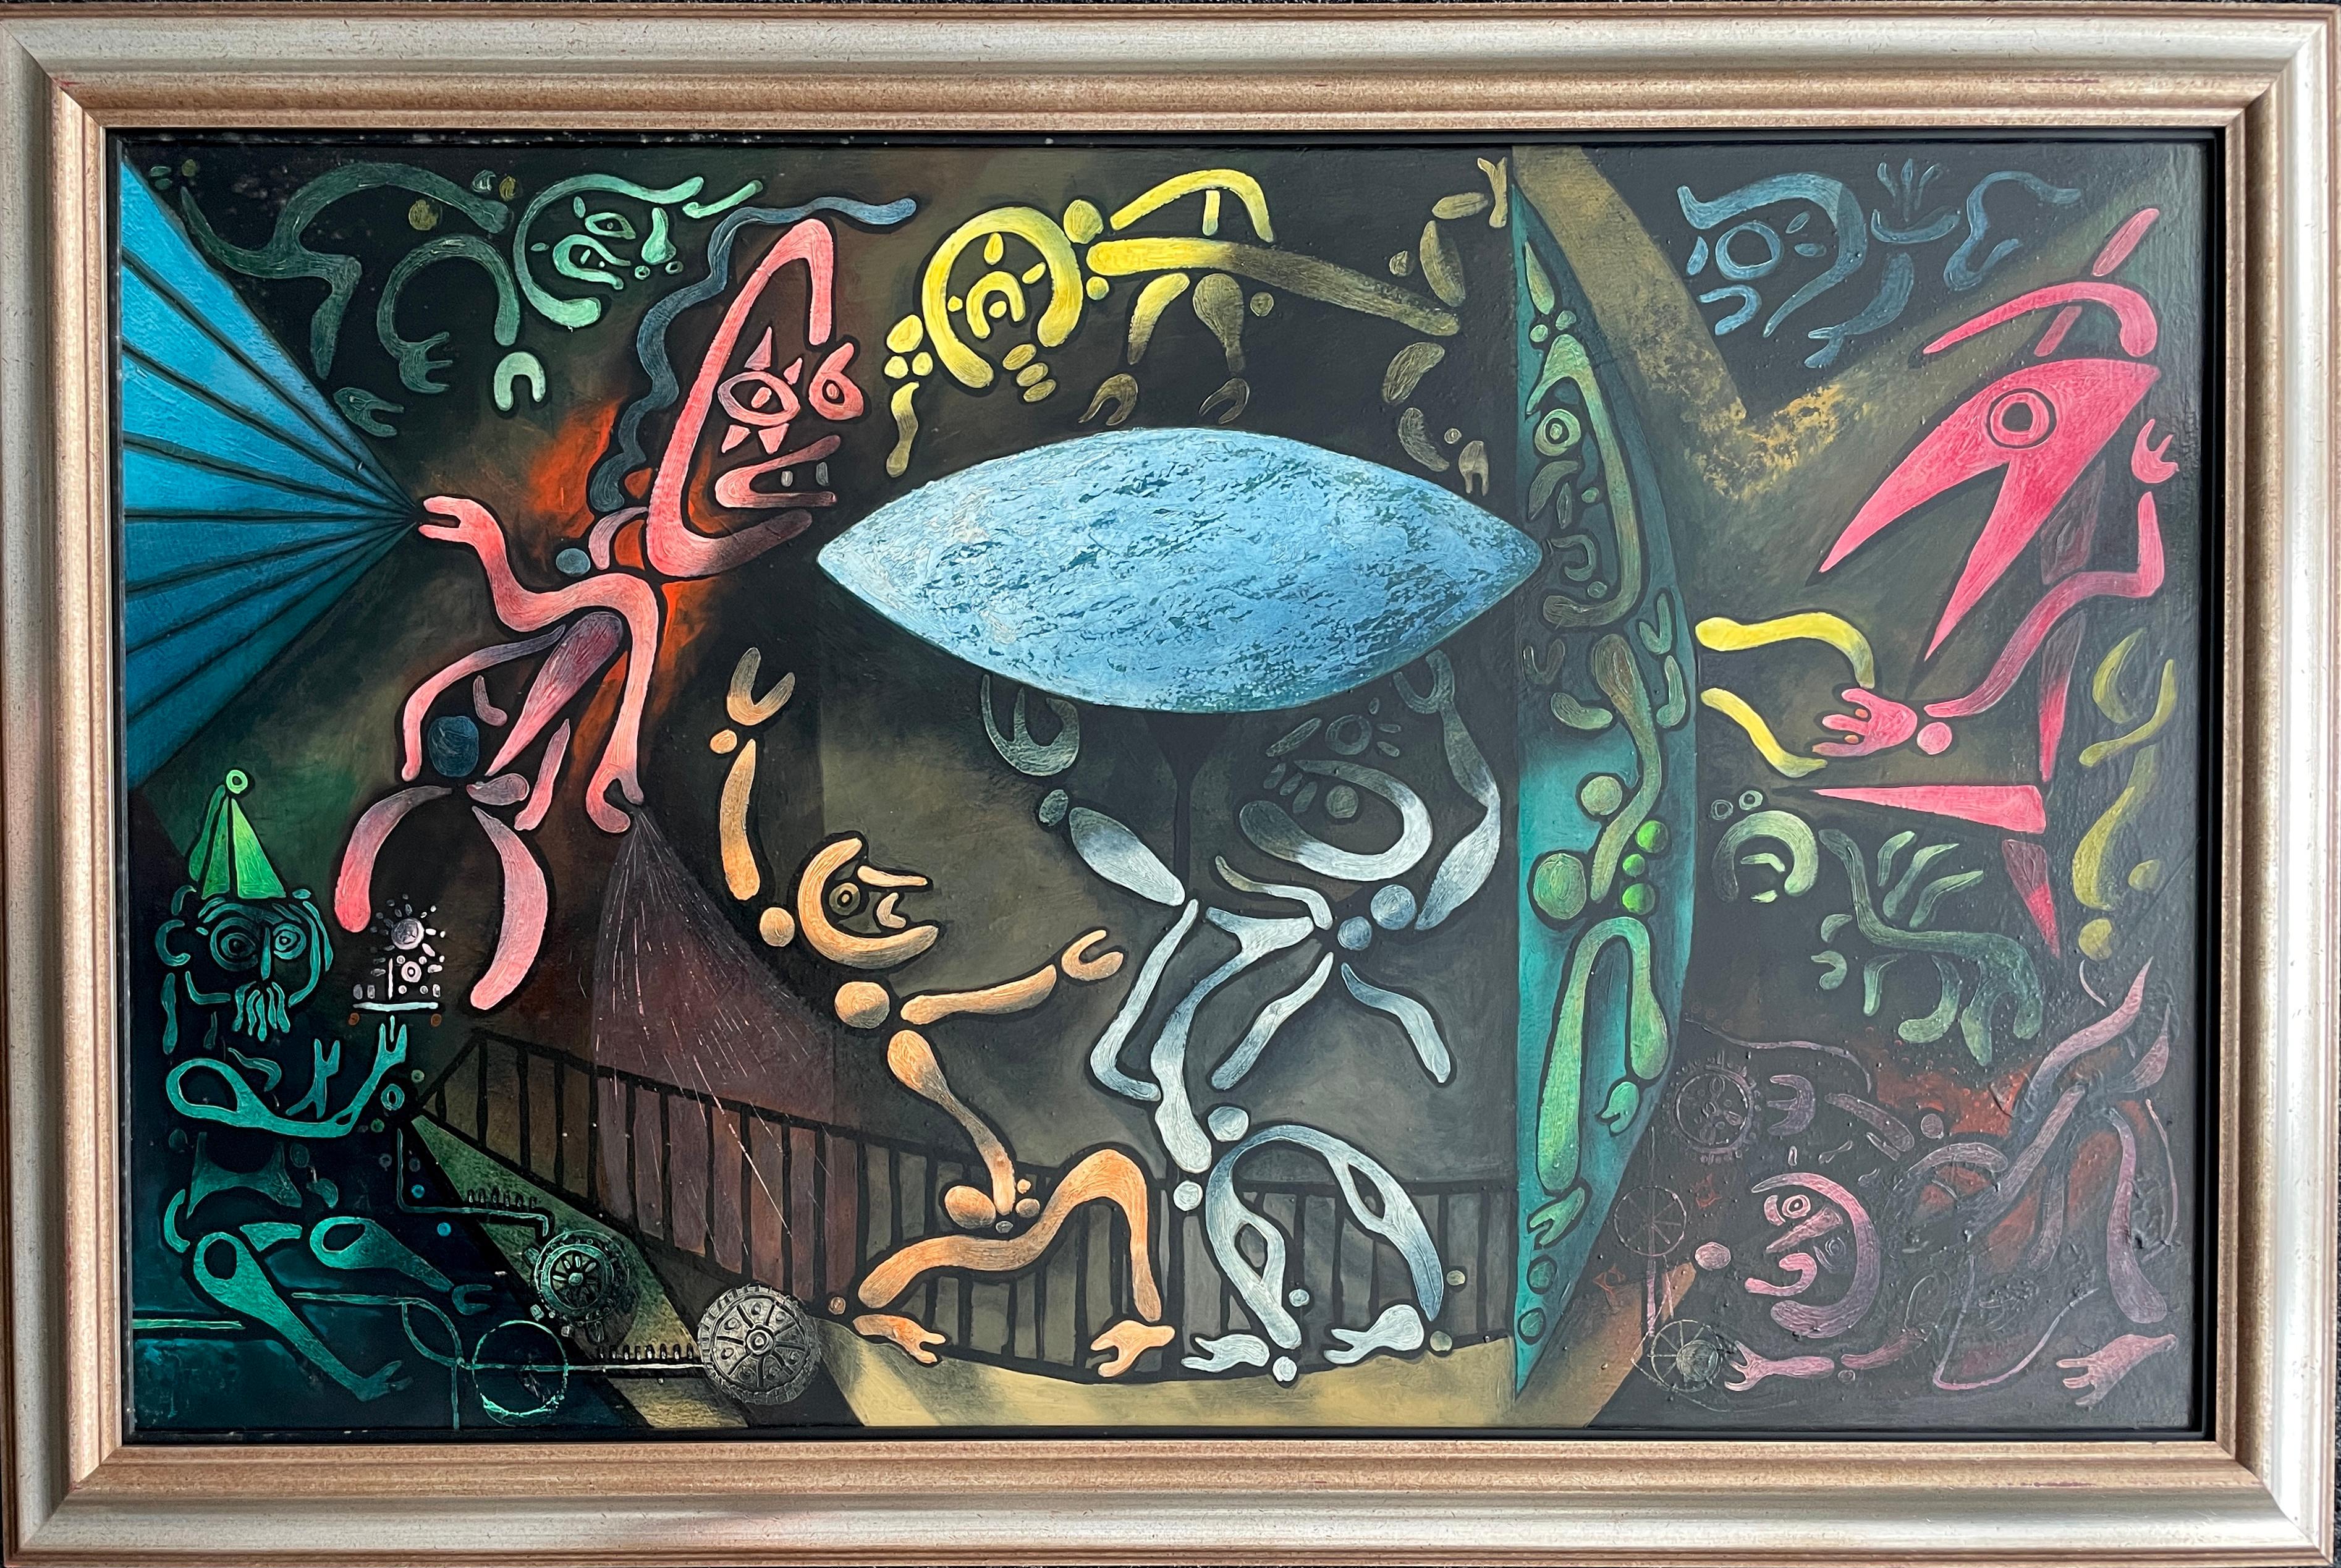 Julio De Diegos Gemälde der Atomic Series sind ein außergewöhnliches Zeugnis des Schocks und der Angst, die mit dem Anbruch des Atomzeitalters einhergingen. In den Worten des Künstlers: "Wissenschaftler arbeiteten im Geheimen an der Entwicklung